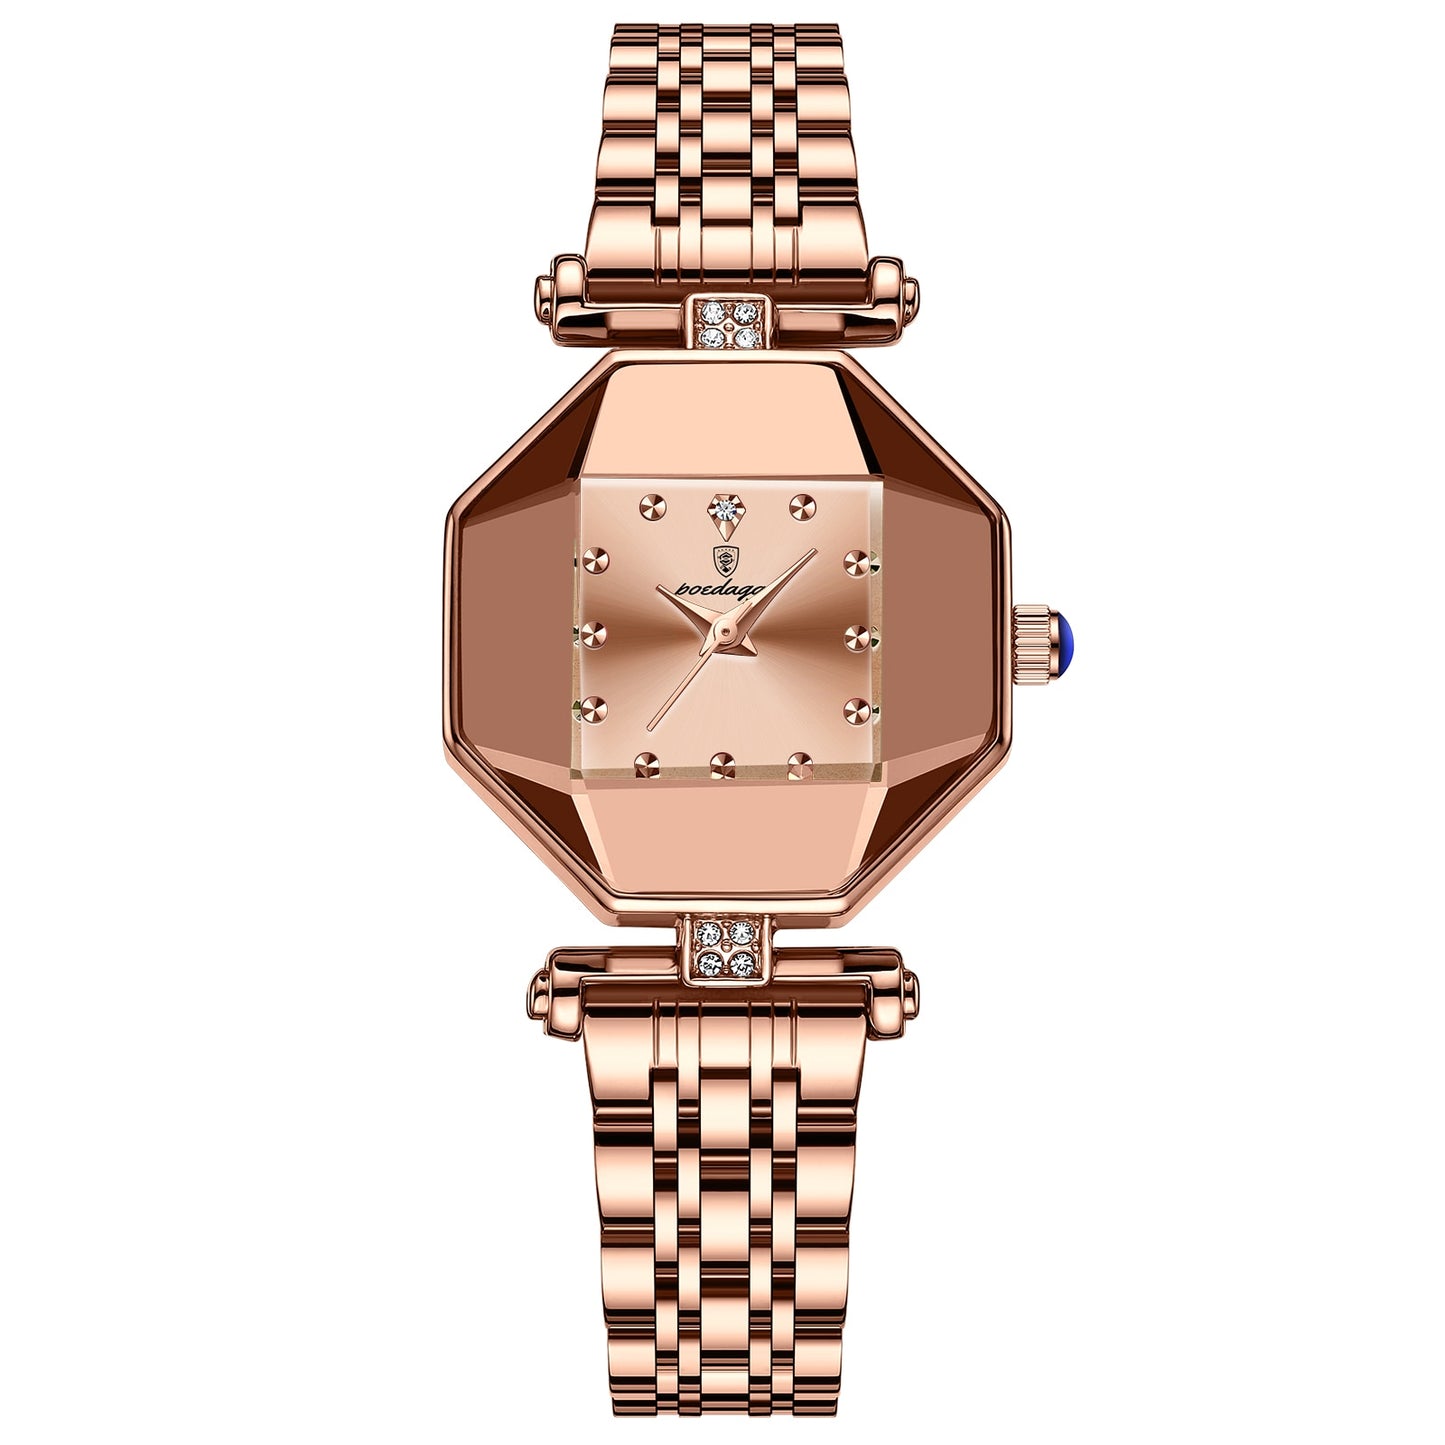 POEDAGAR Women Watch Fashion Luxury Stainless Stain Waterproof Quartz Watches Swiss Top Brand Rose Gold Ladies Wristwatch Gift